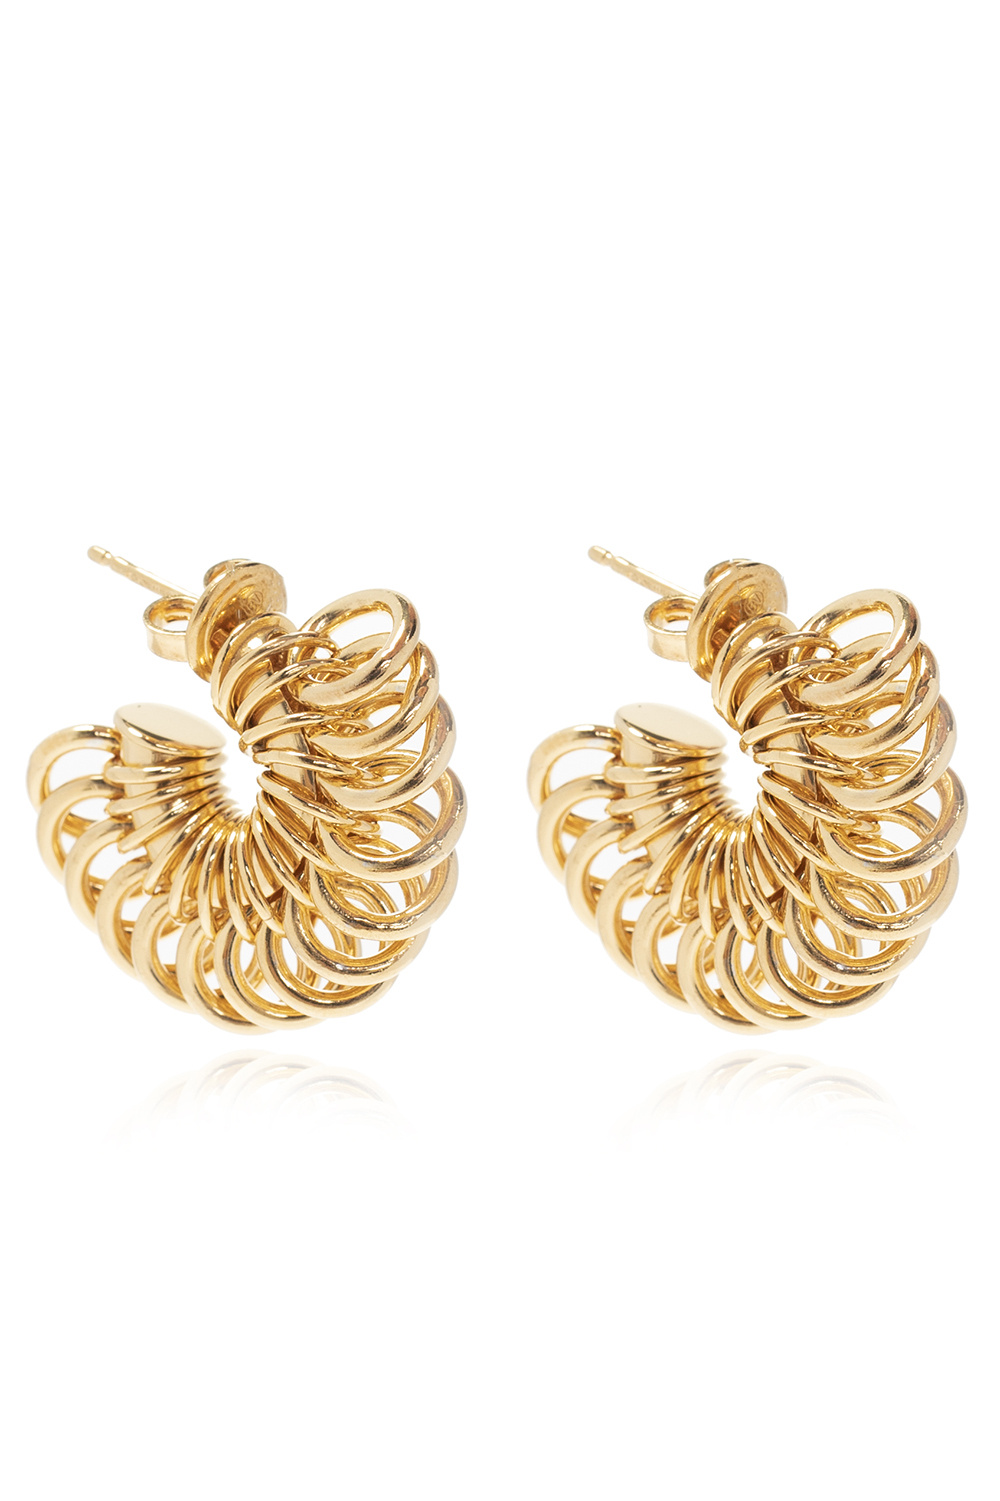 Bottega Veneta bottega veneta 18kt gold vermeil earrings